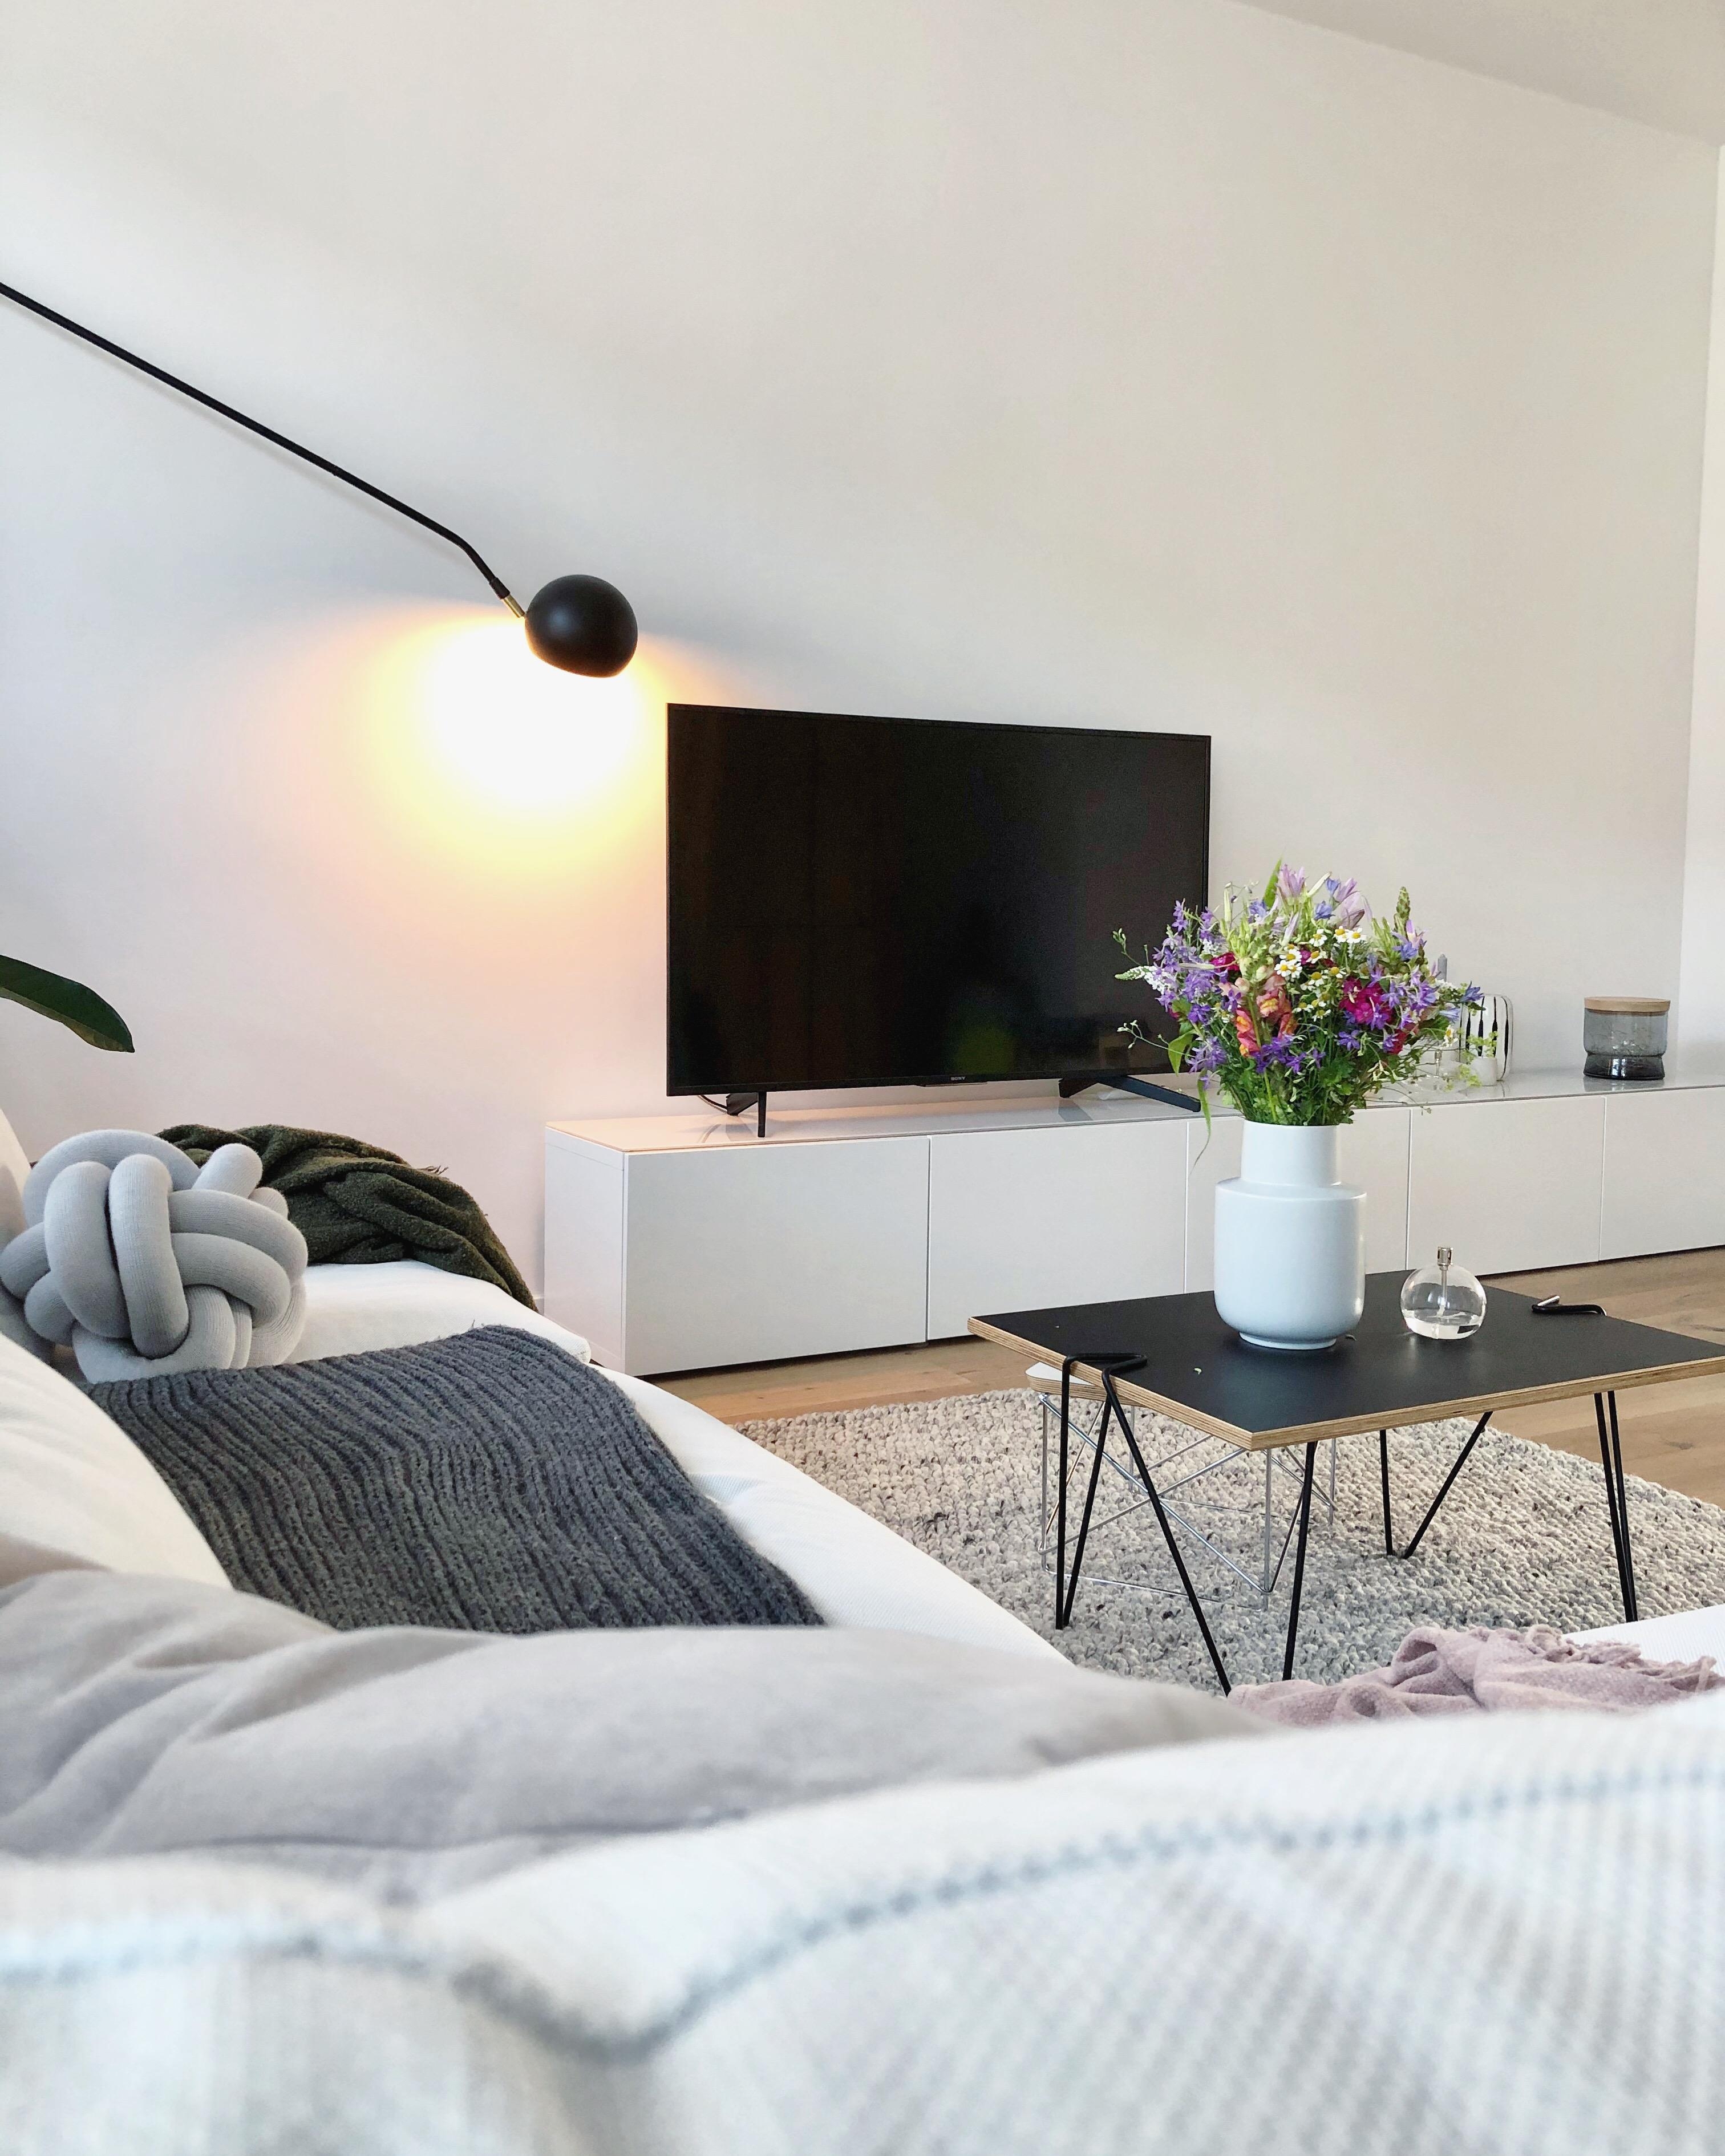 #GuteNacht 💙 
#wohnzimmer #livingroom #couch #couchstyle #sofa #couchtisch #sideboard #TV #freshflowers #blumen